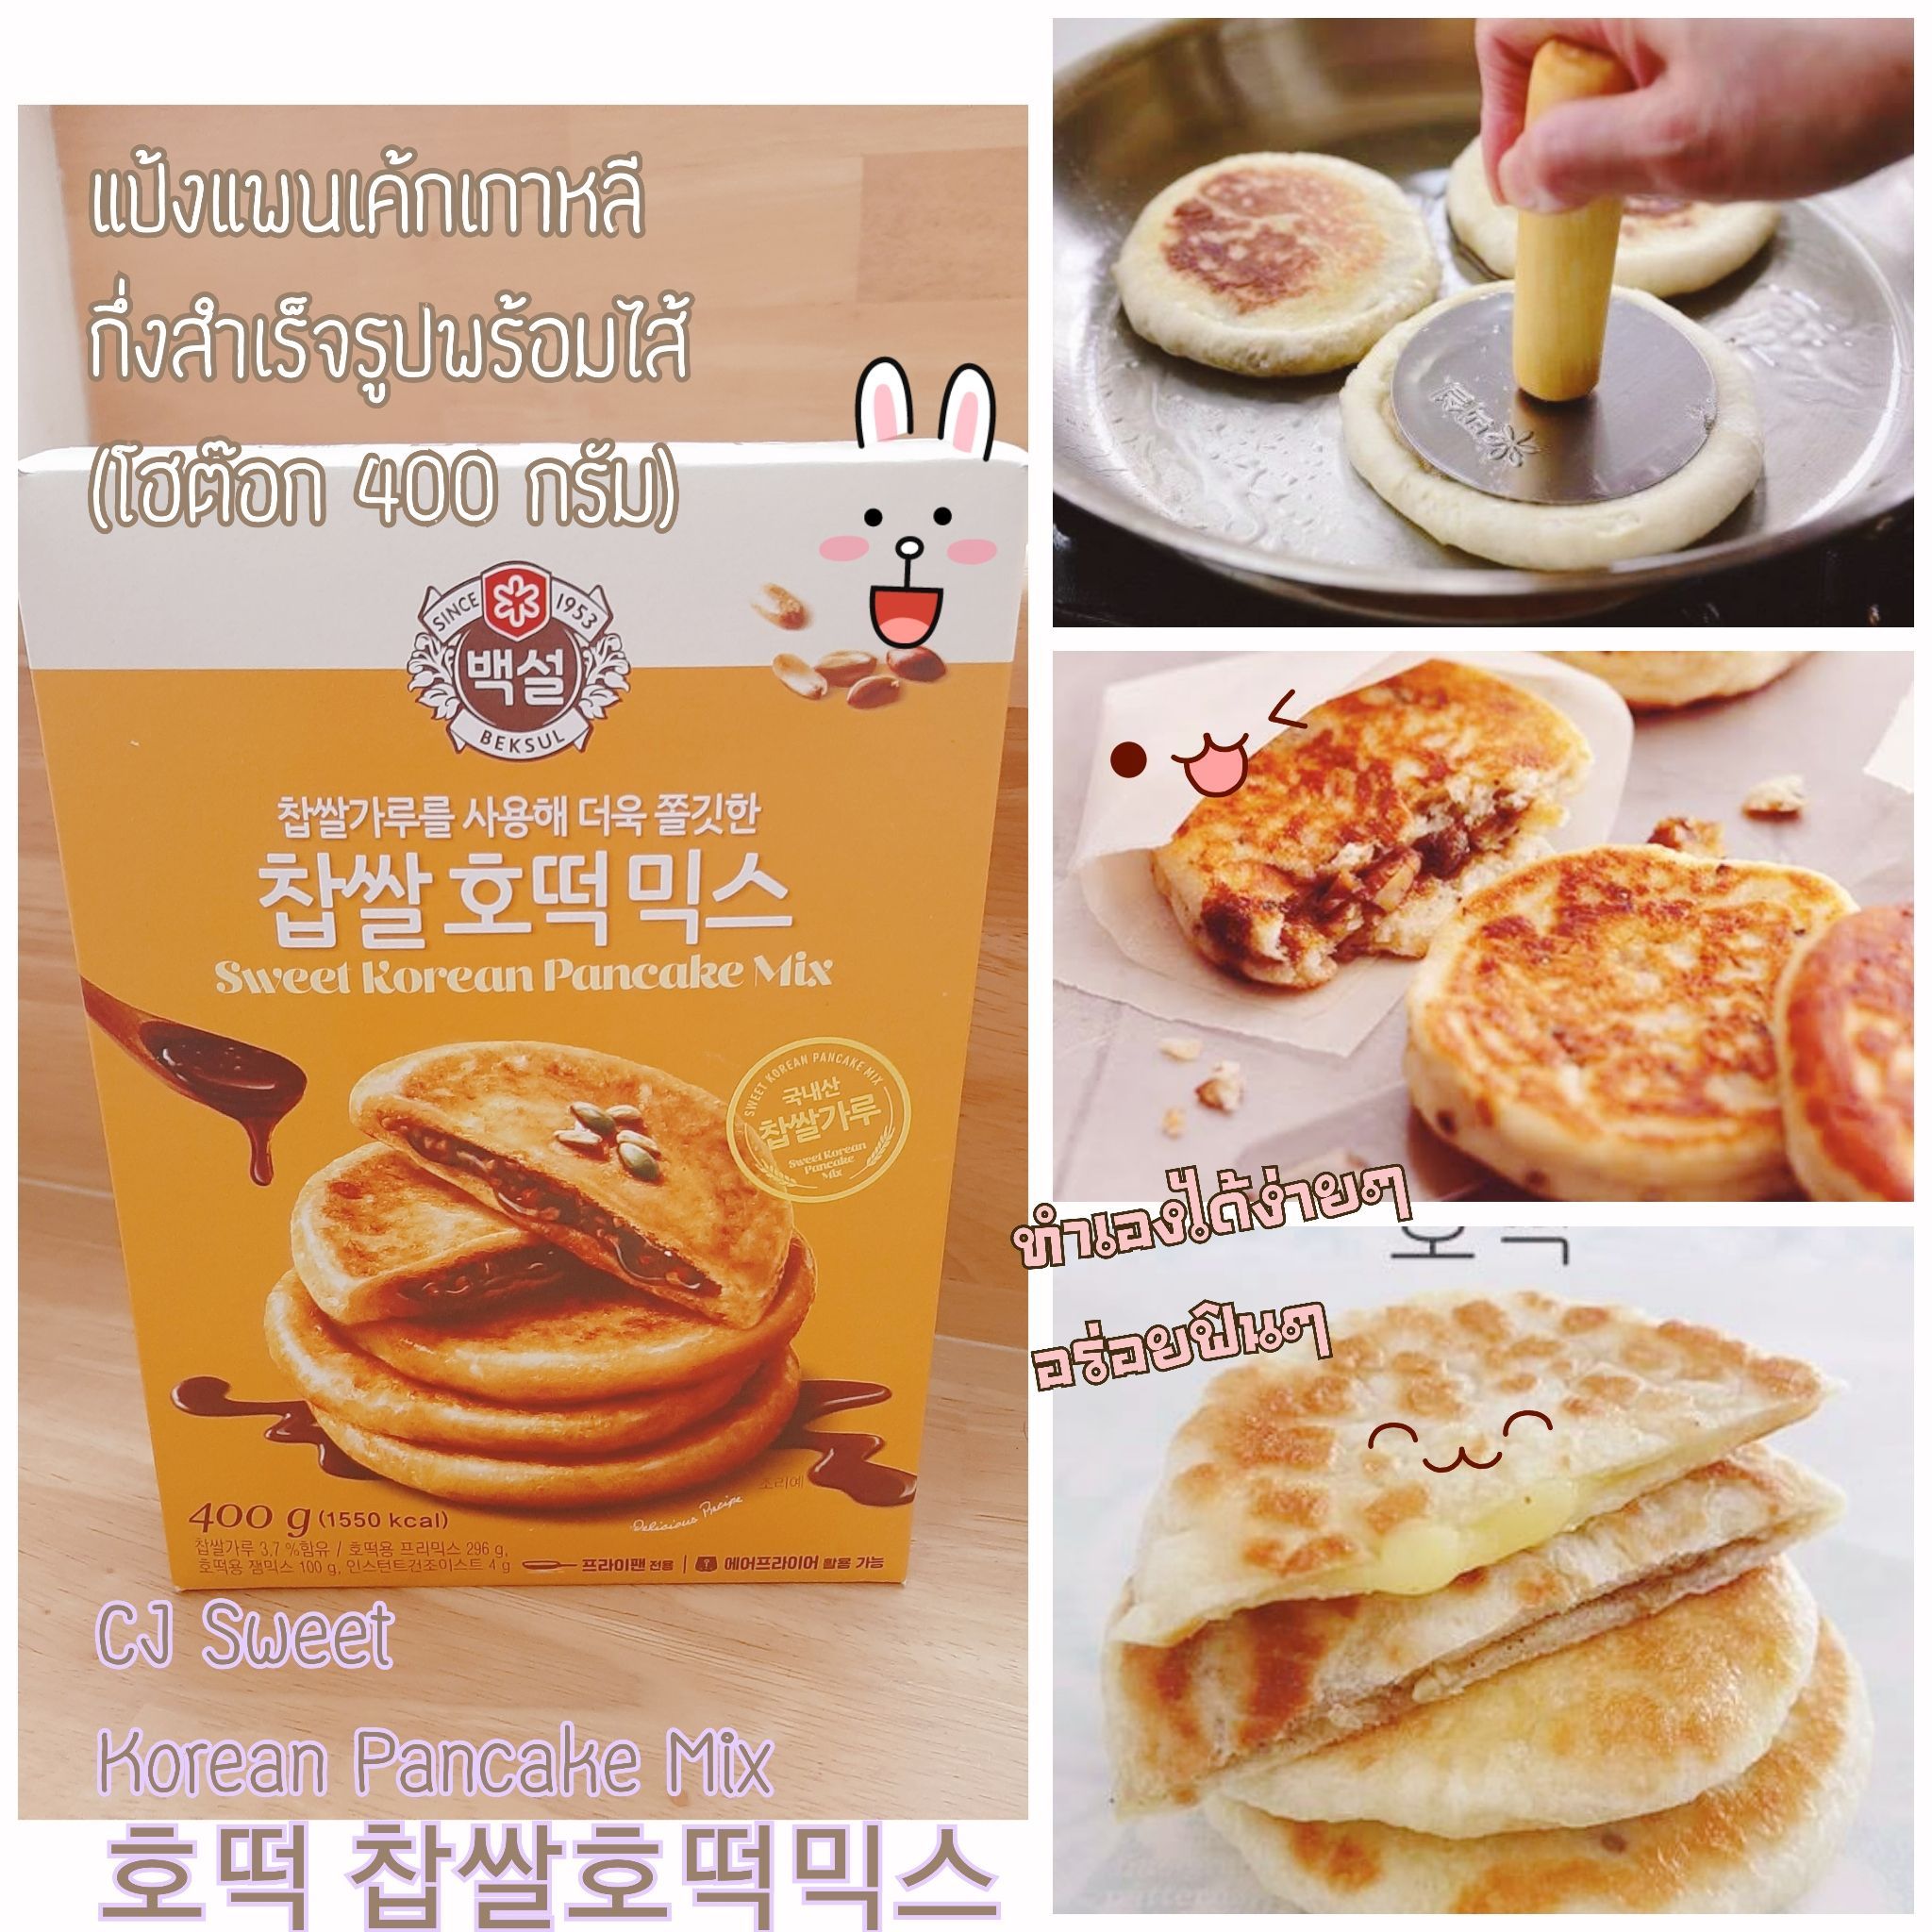 CJ Sweet Korean Pancake Mix 호떡 찹쌀호떡믹스  แป้งแพนเค้กเกาหลีกึ่งสำเร็จรูปพร้อมไส้ (โฮต๊อก 400 กรัม)